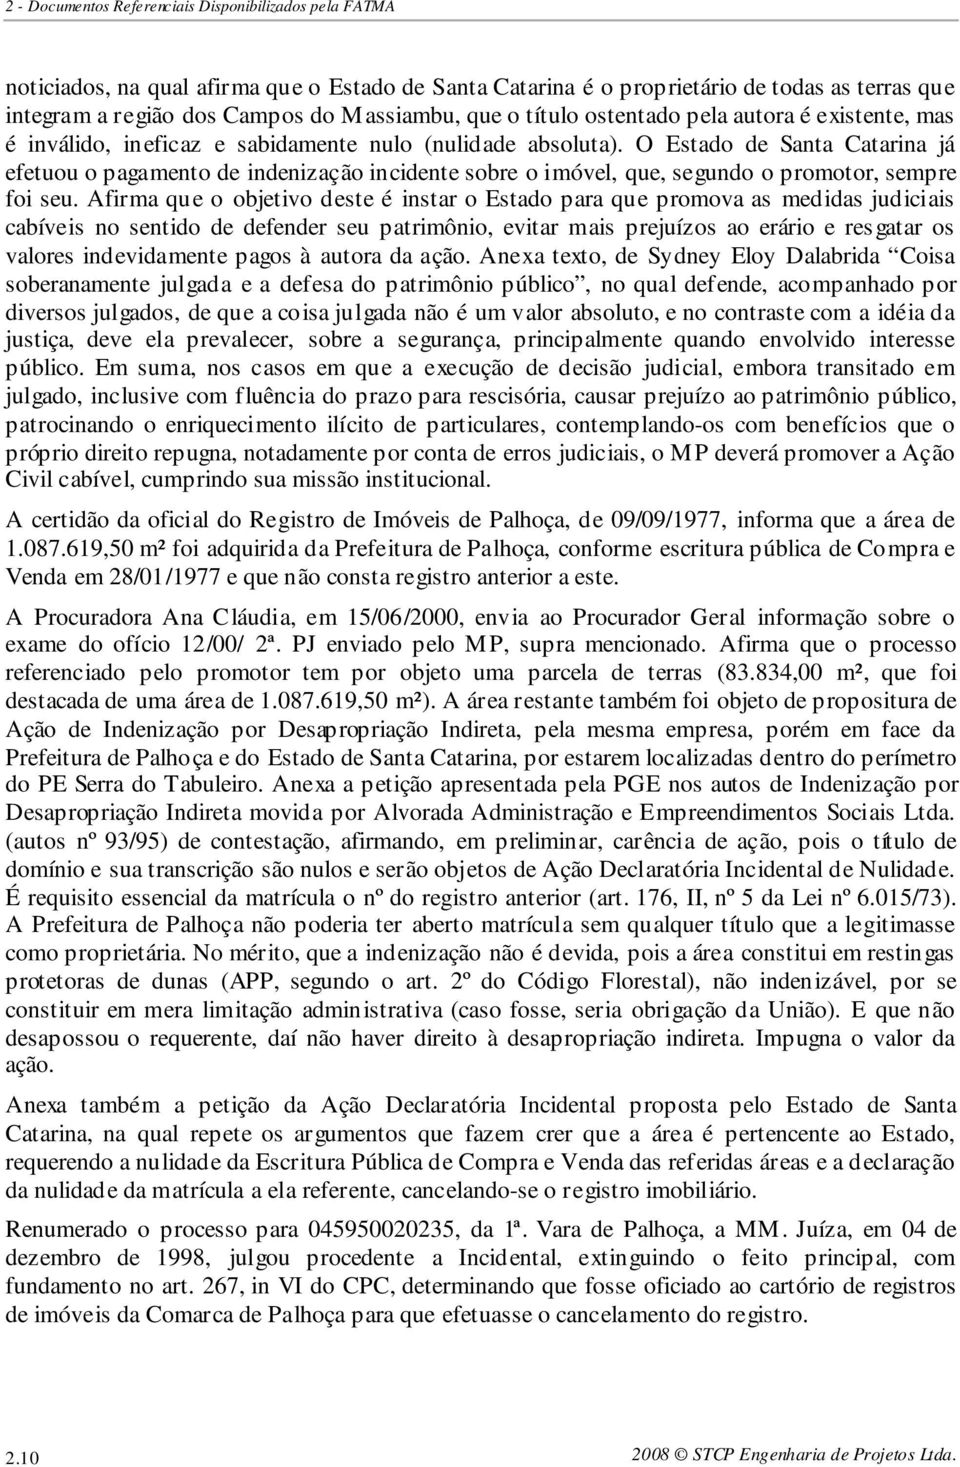 O Estado de Santa Catarina já efetuou o pagamento de indenização incidente sobre o imóvel, que, segundo o promotor, sempre foi seu.